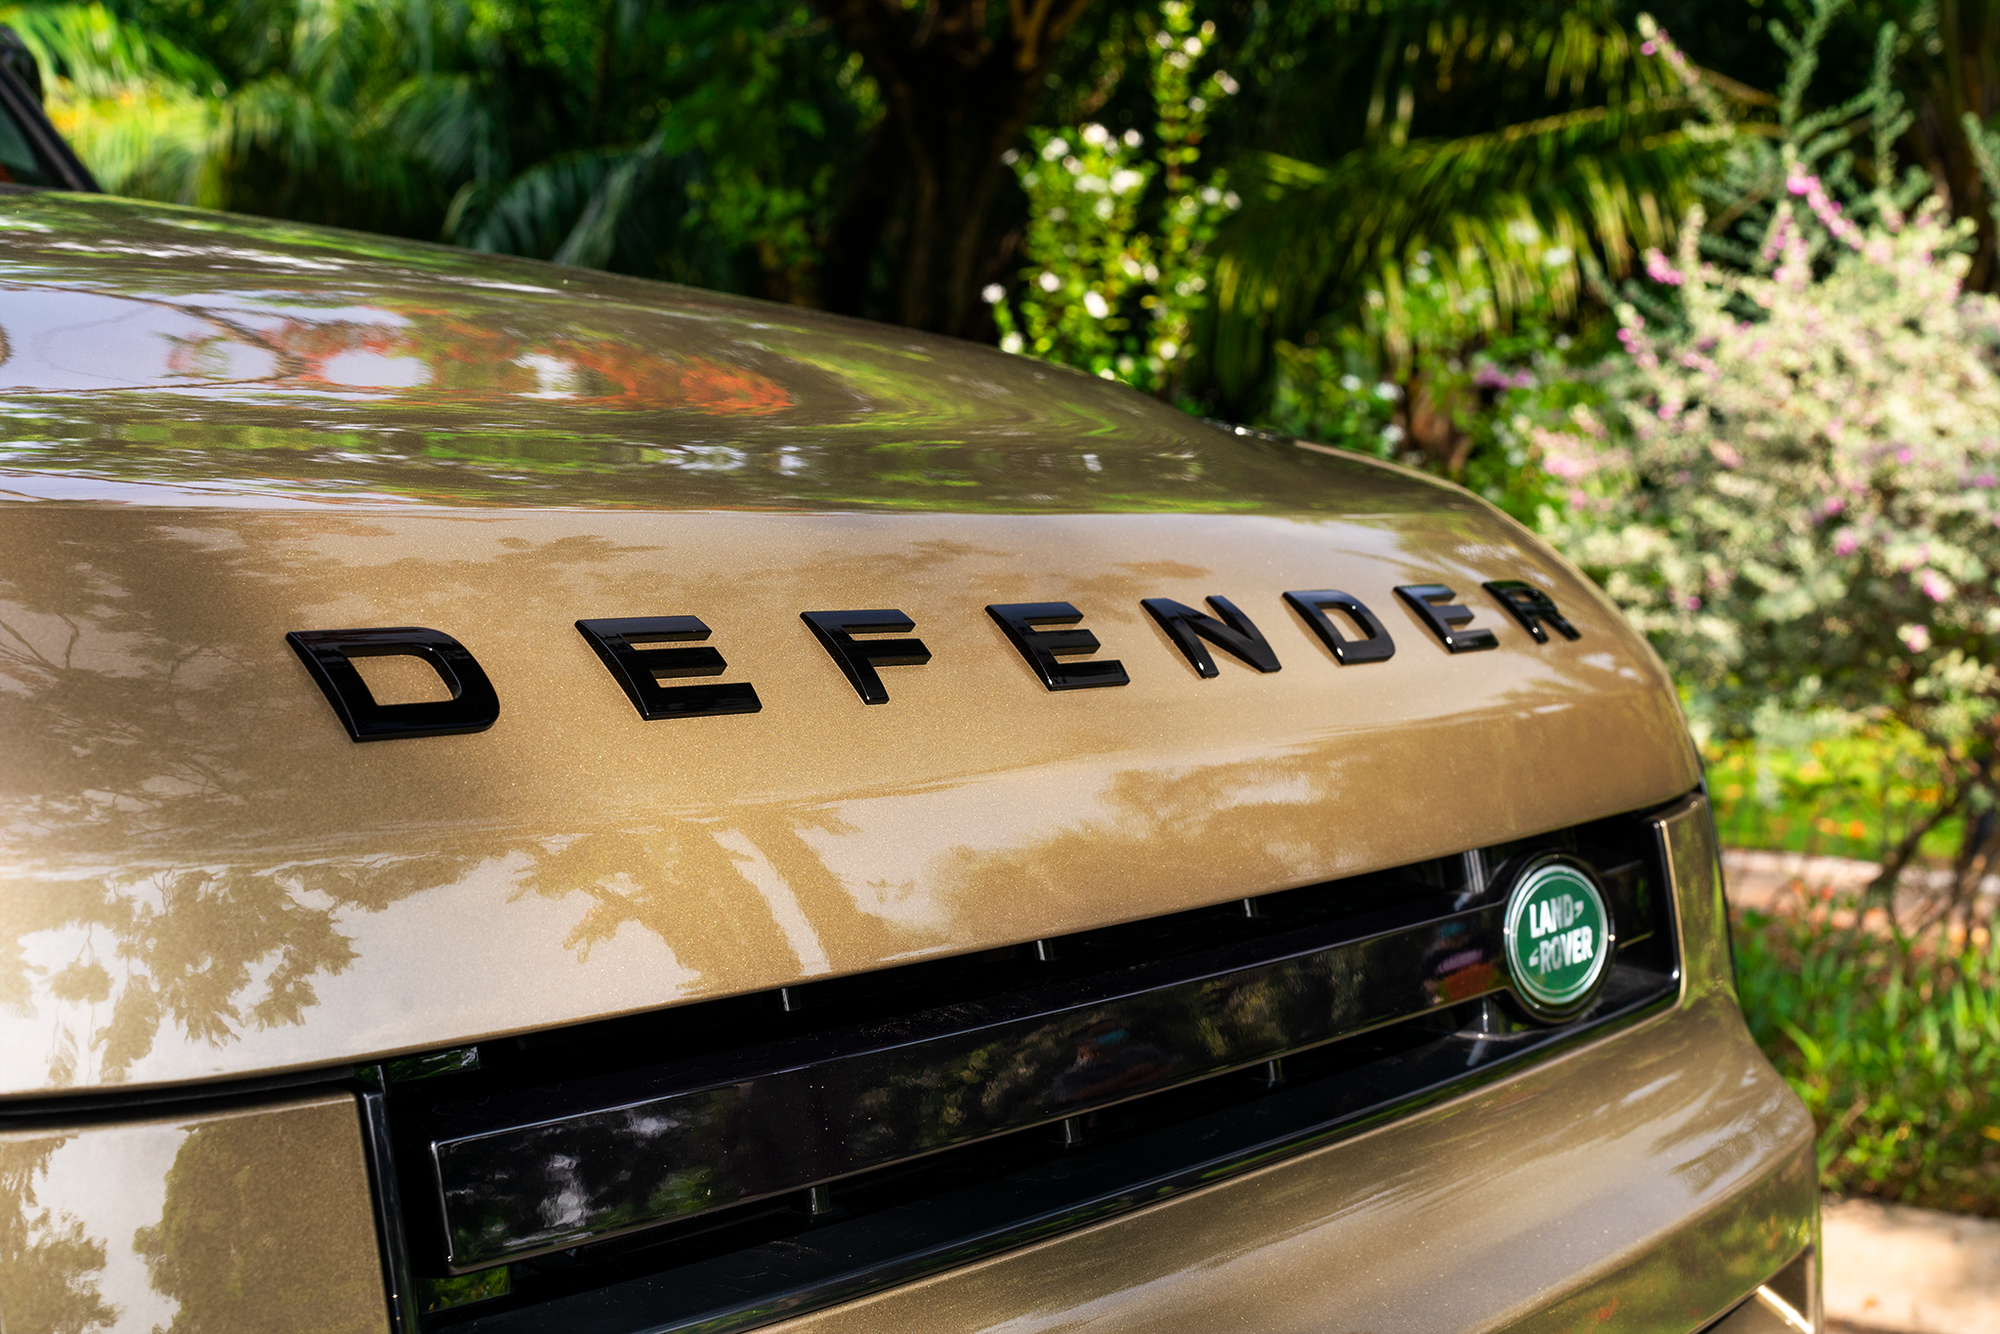 Ra mắt Land Rover Defender 90 tại Việt Nam: SUV chơi off-road giá gần 4 tỷ đồng cho nhà giàu - Ảnh 8.